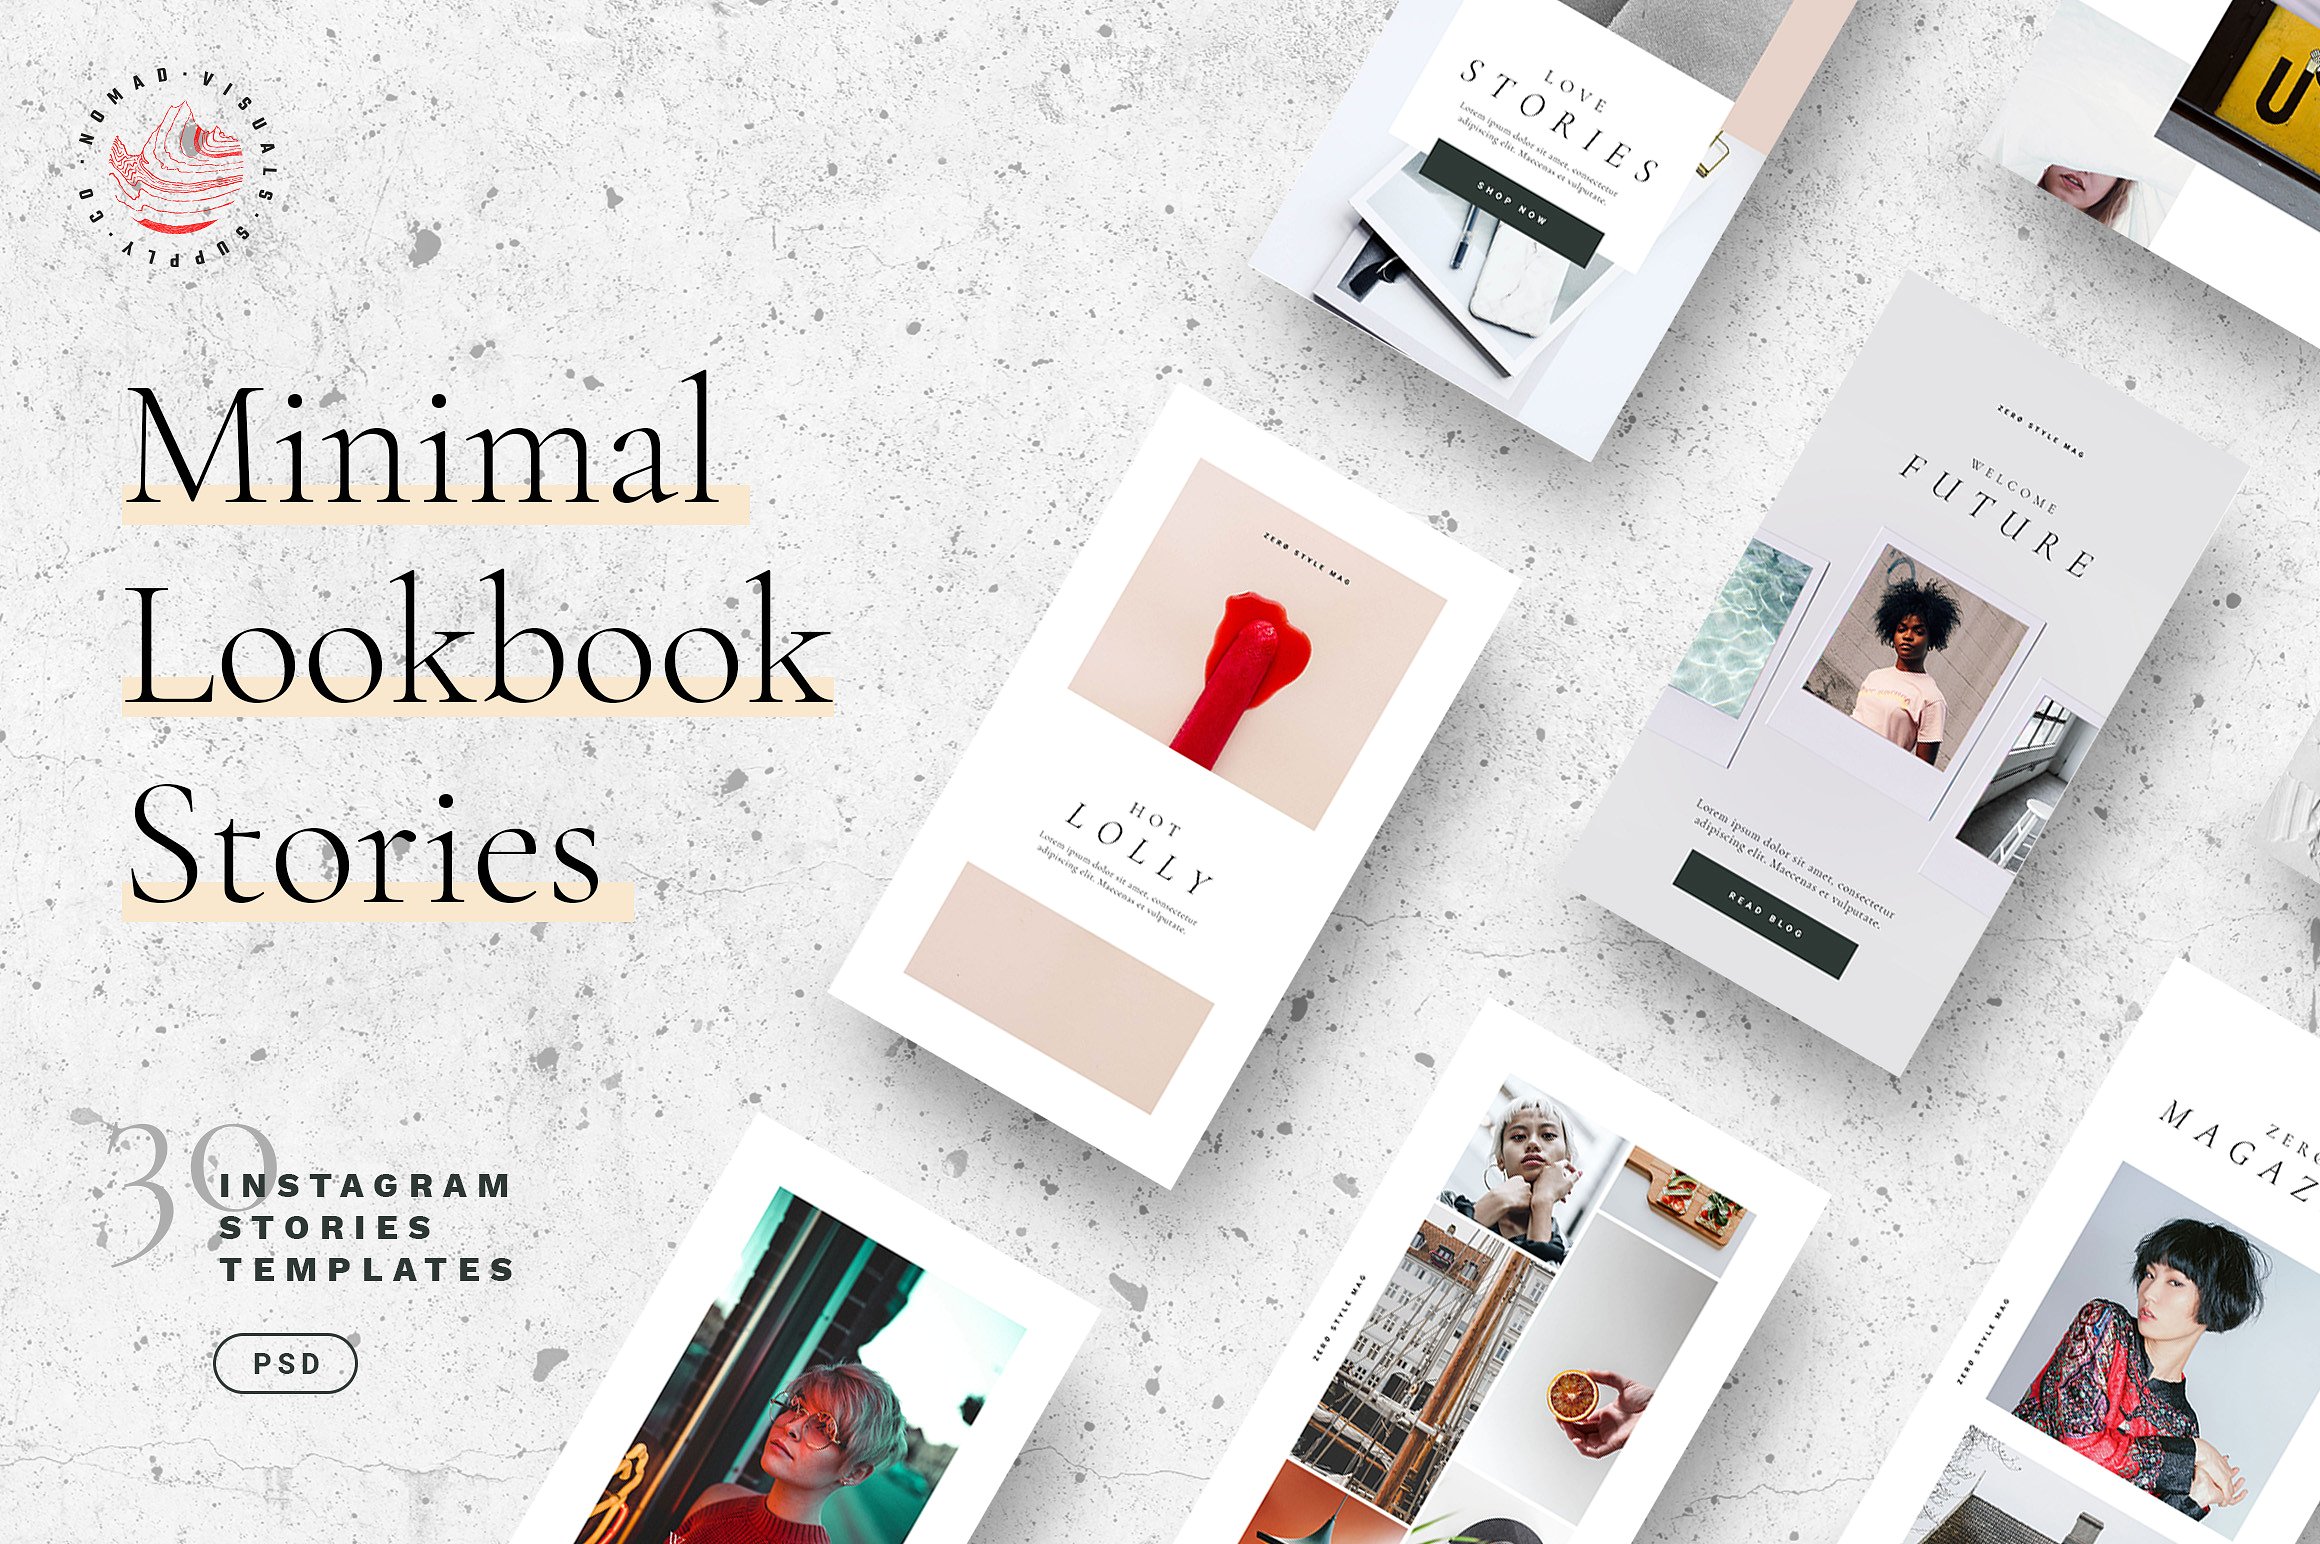 30个独特时尚的Lookbook社交媒体Instagram故事模板16设计网精选 Minimal Lookbook Instagram Stories [psd]插图